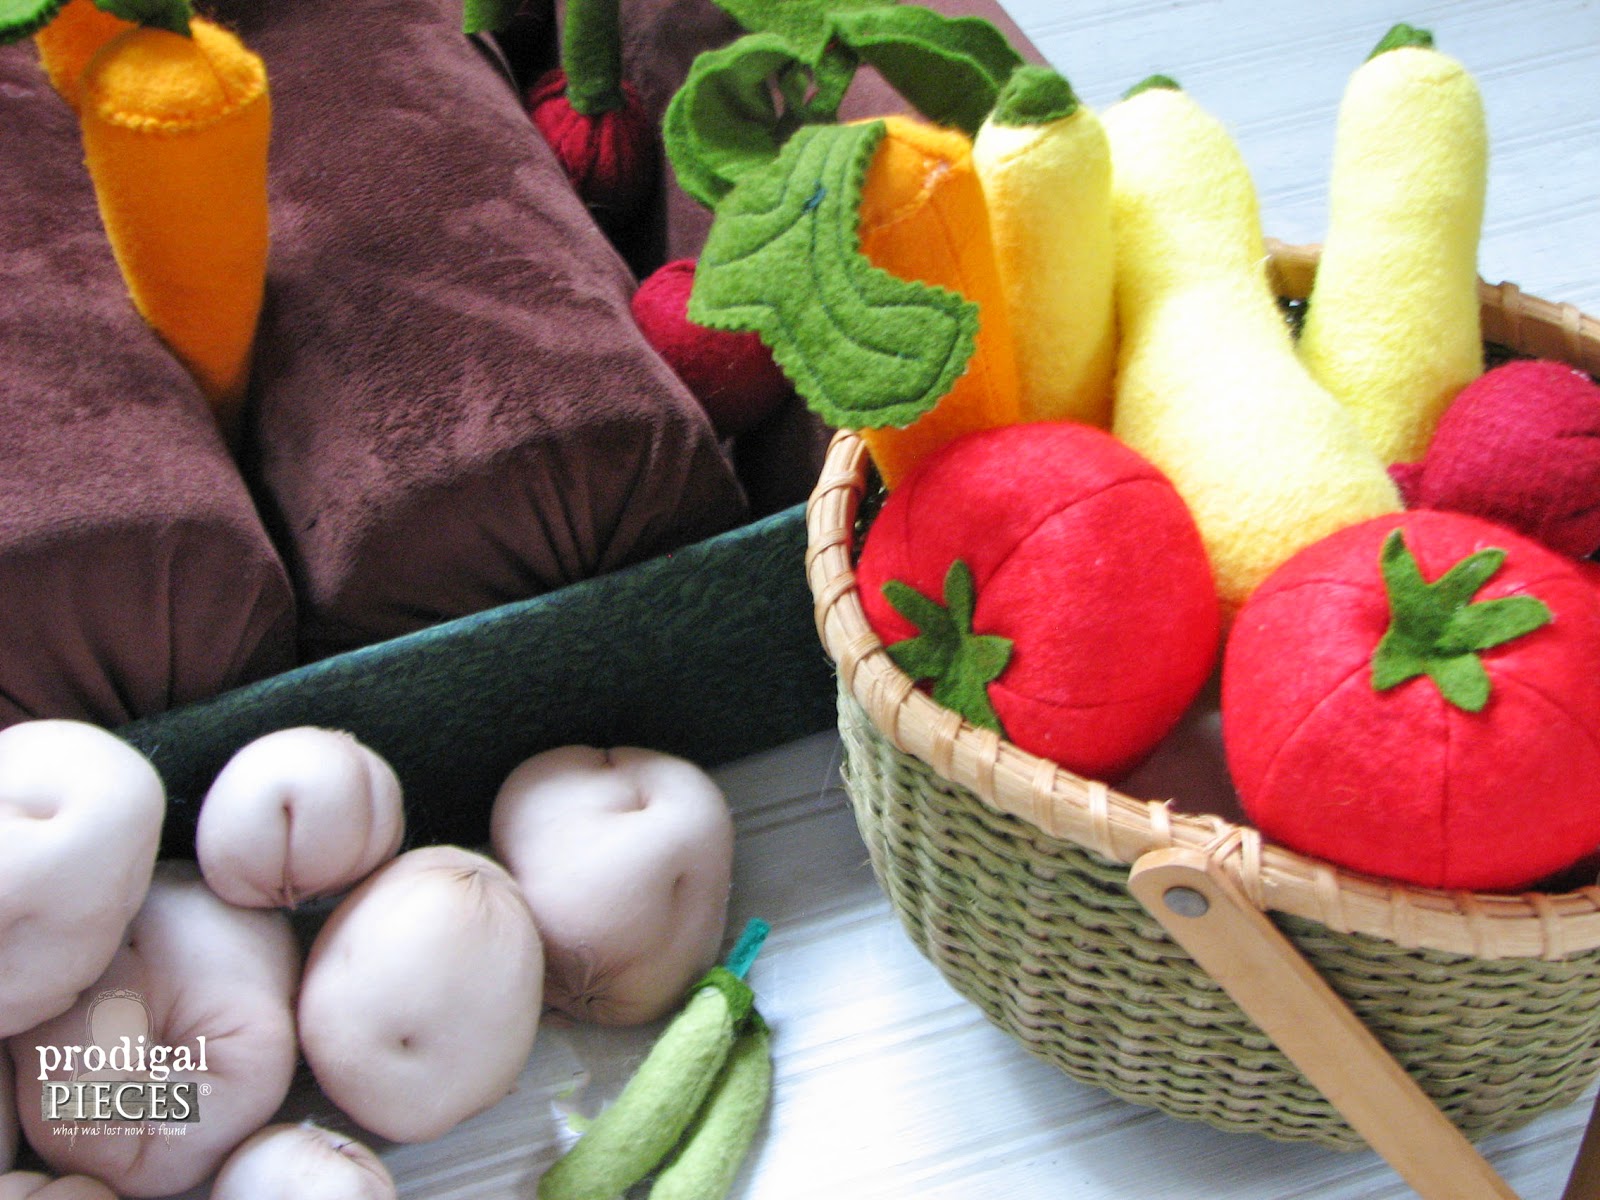 Handmade Felt Garden Vegetables & Fruits Pretend Play Set by Prodigal Pieces | prodigalpieces.com #prodigalpieces